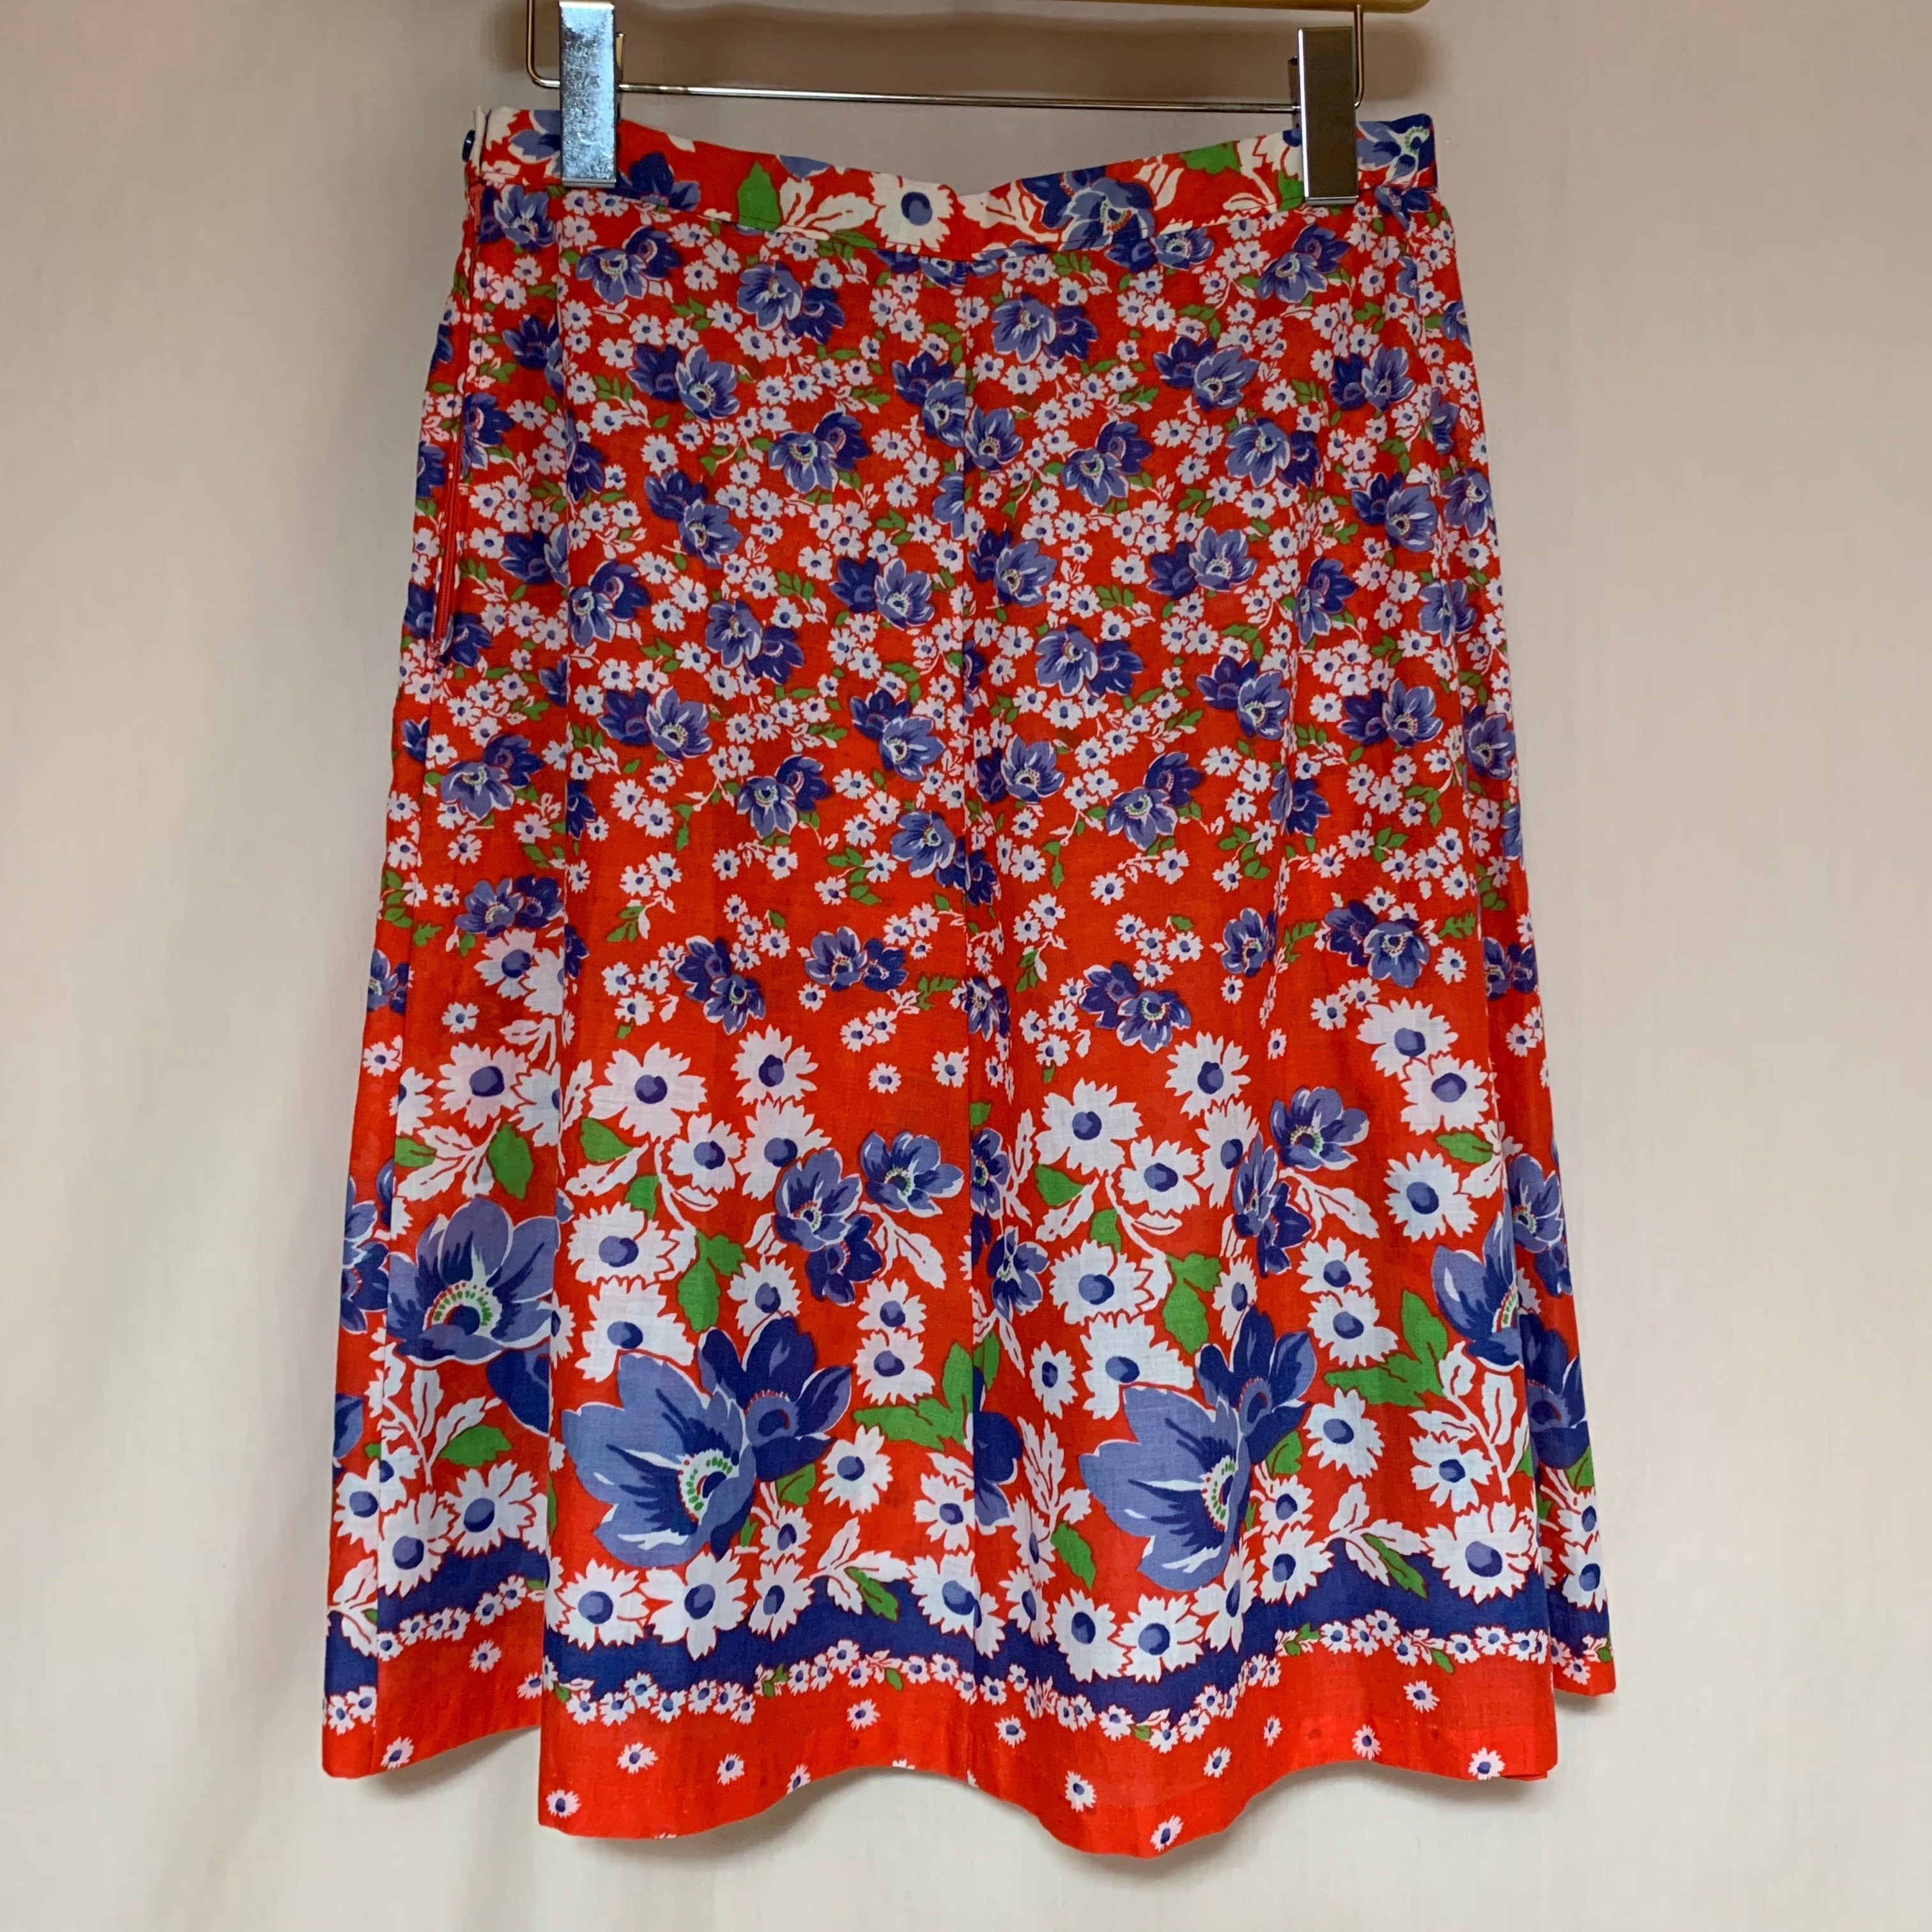 イタリア製 スカート 花柄 ストライプ プリーツ  紺 赤 白